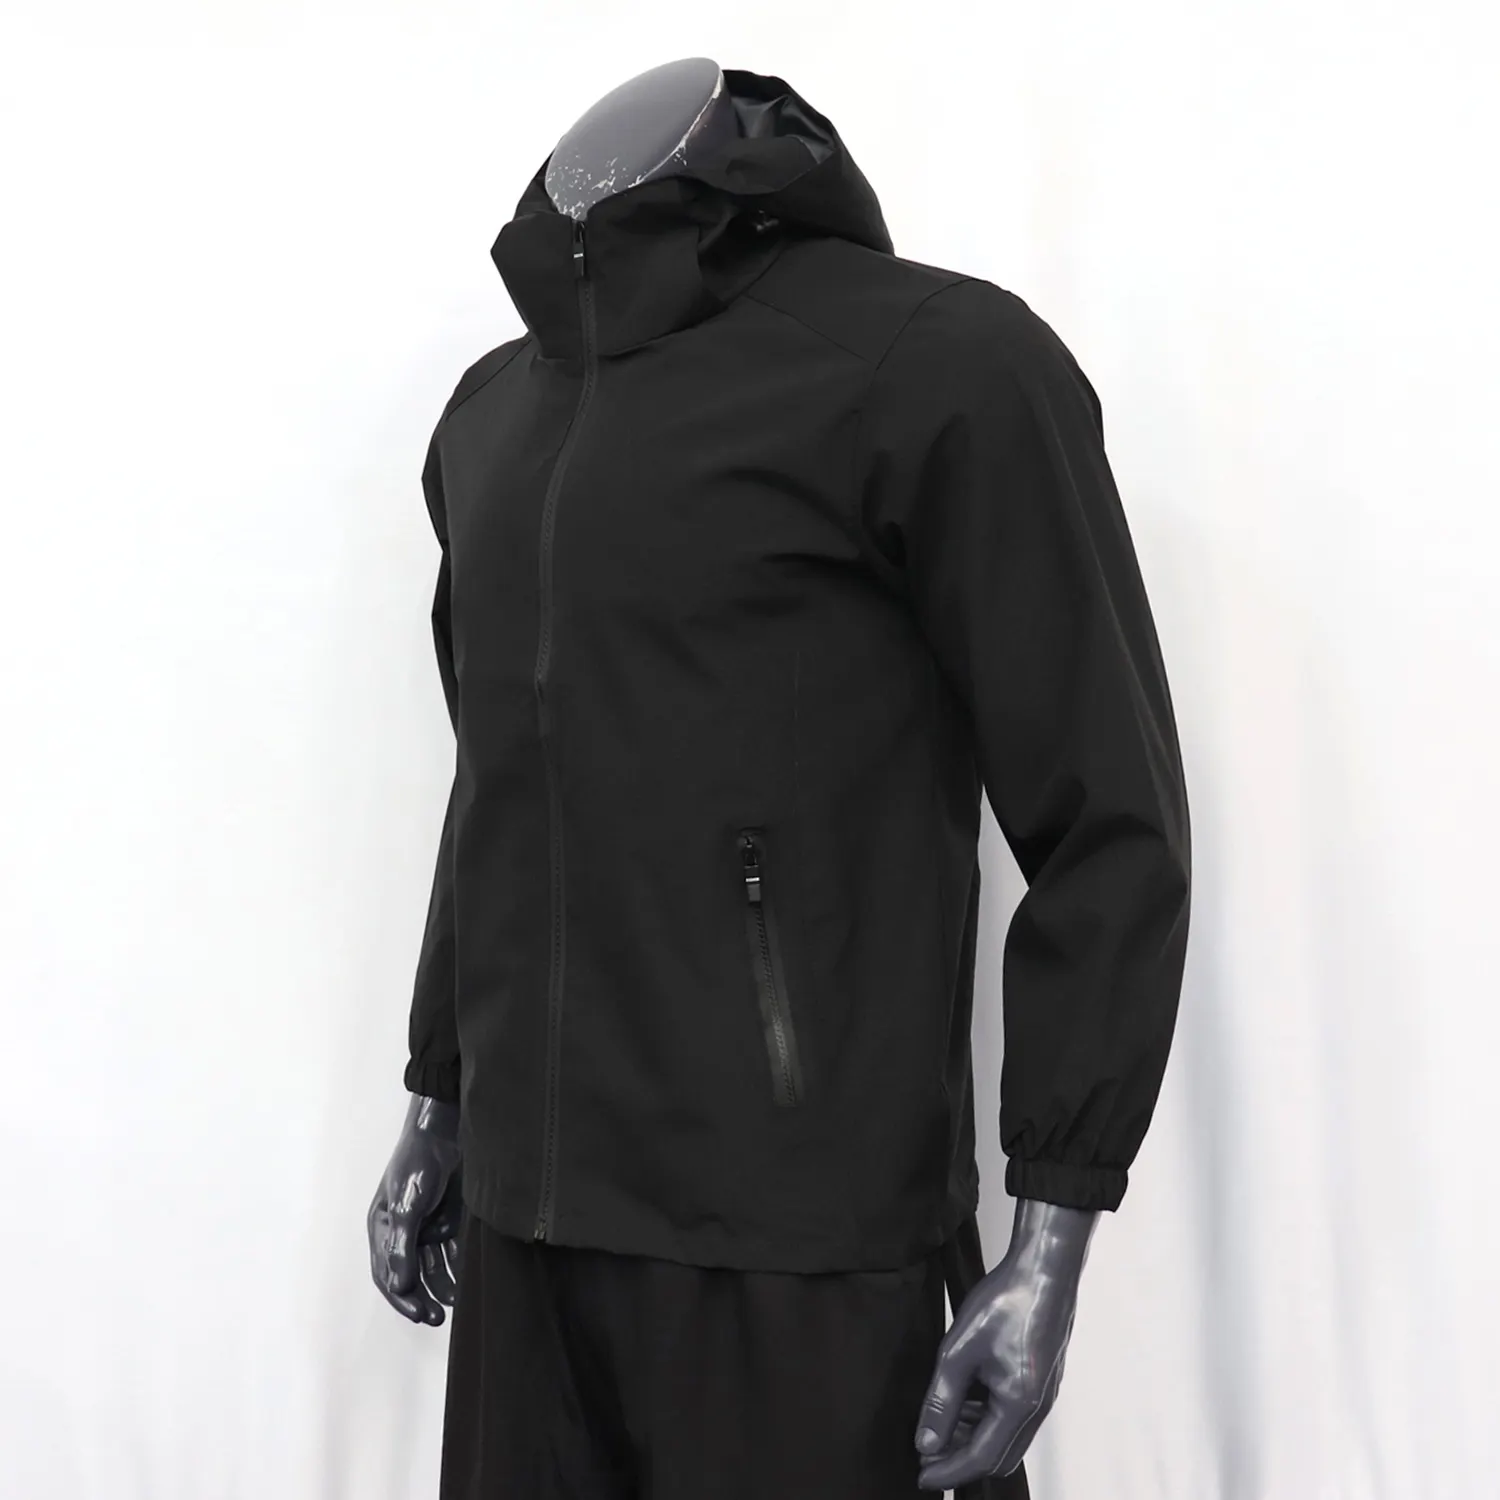 Akilex Custom Design alta qualità Low MOQ tuta da Jogging giacca a vento in Nylon riflettente impermeabile da uomo